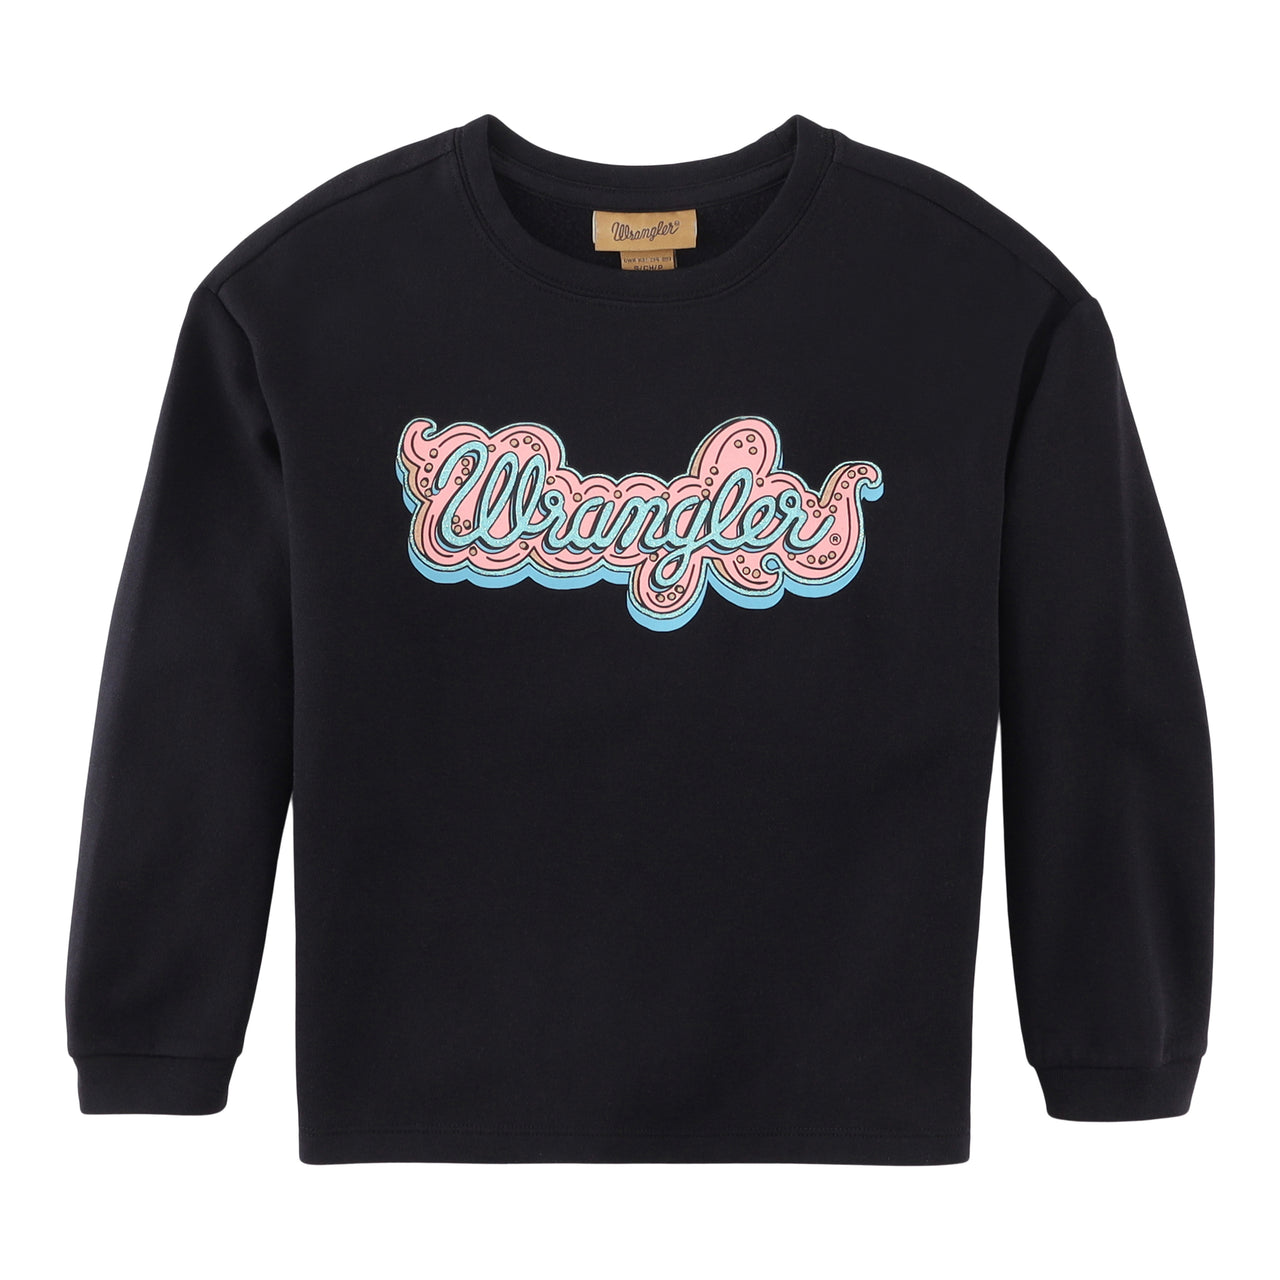 Wrangler Girl's Sweatshirt - Black